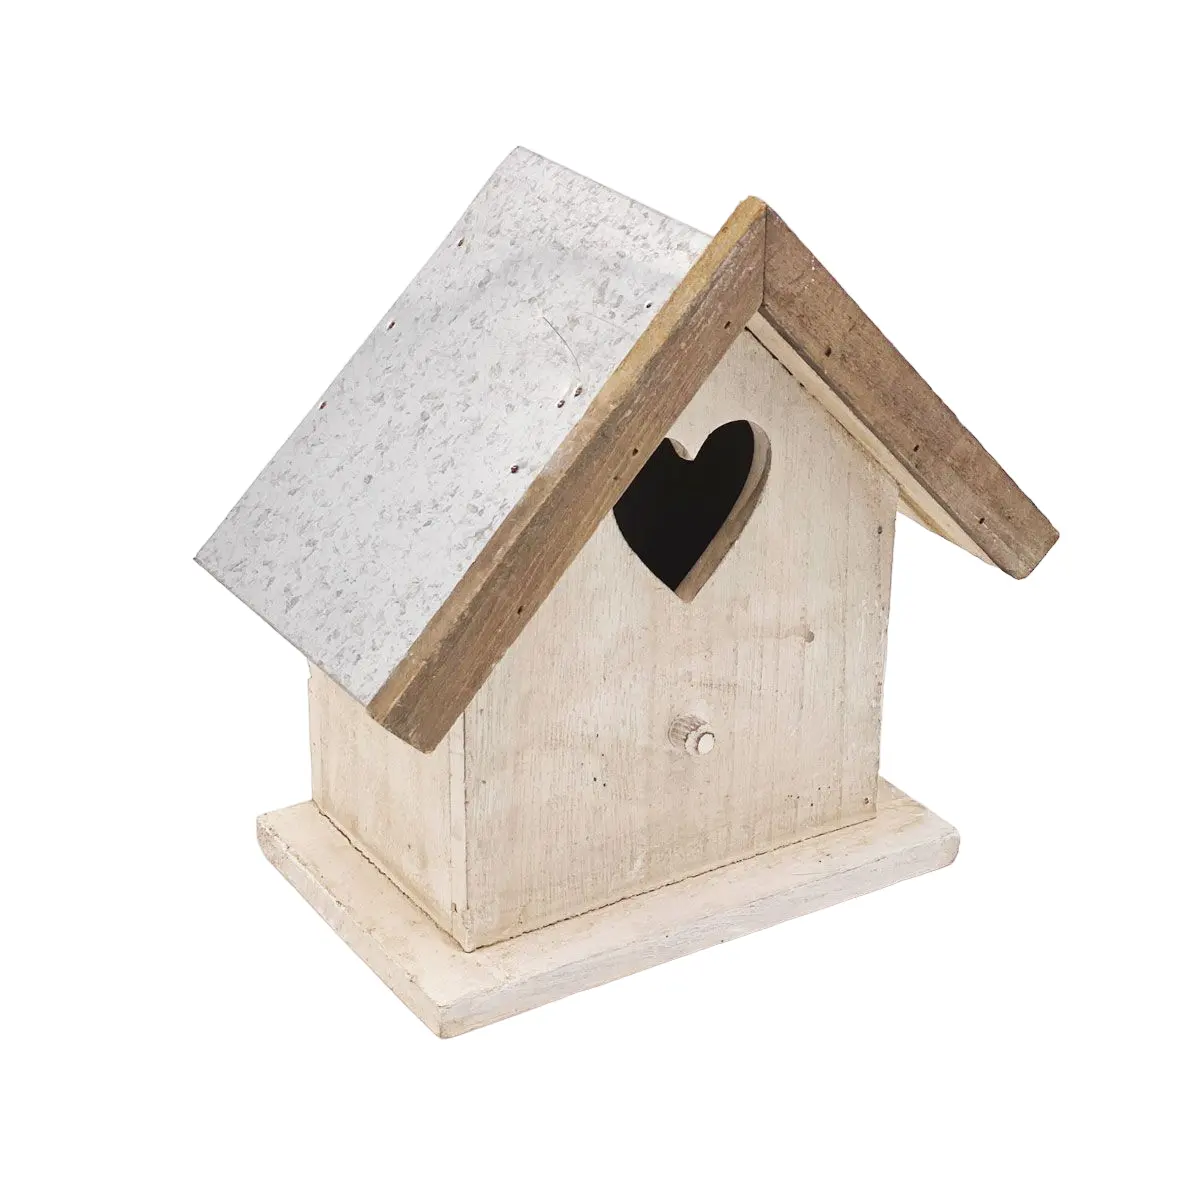 Desain Modern rumah burung kayu untuk di luar dengan kualitas tahan lama elegan dengan tempat makan burung kayu untuk burung dengan harga murah